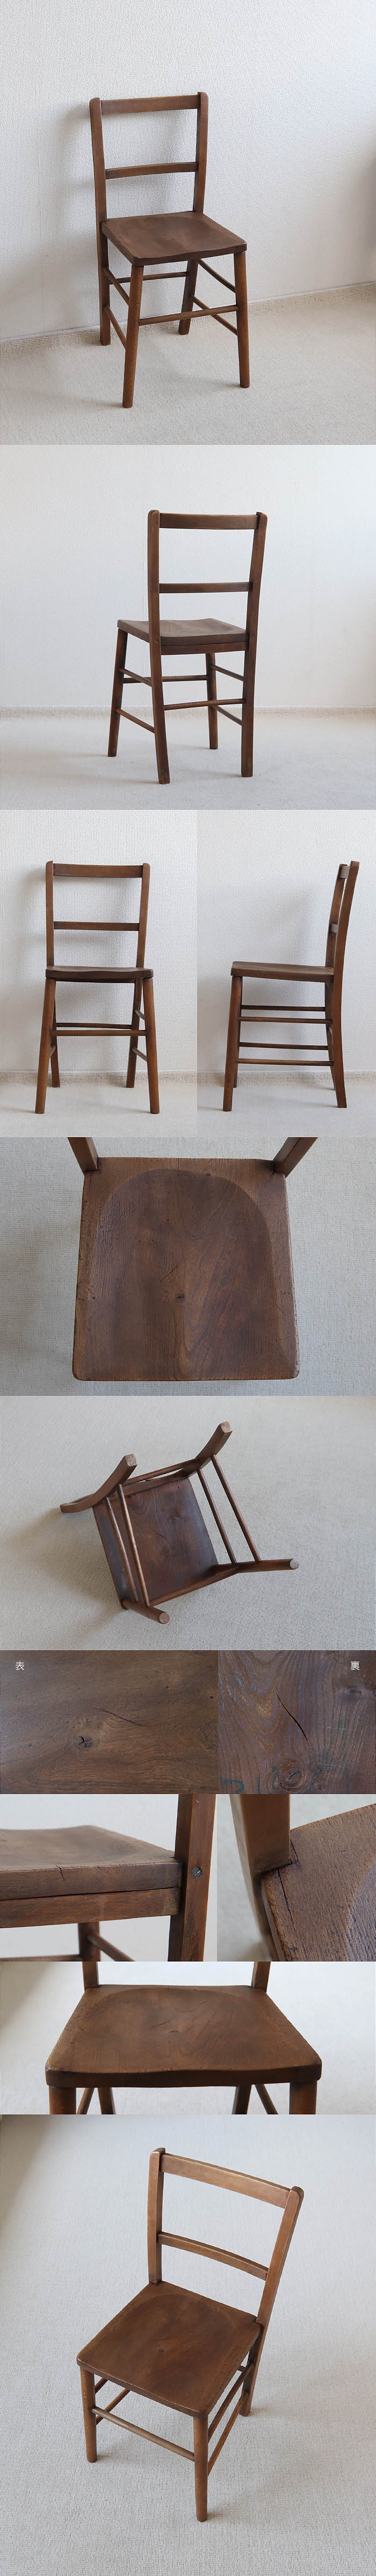 イギリス アンティーク チャイルドチェア 椅子 一枚板 古木 インテリア 無垢材 家具 V-049